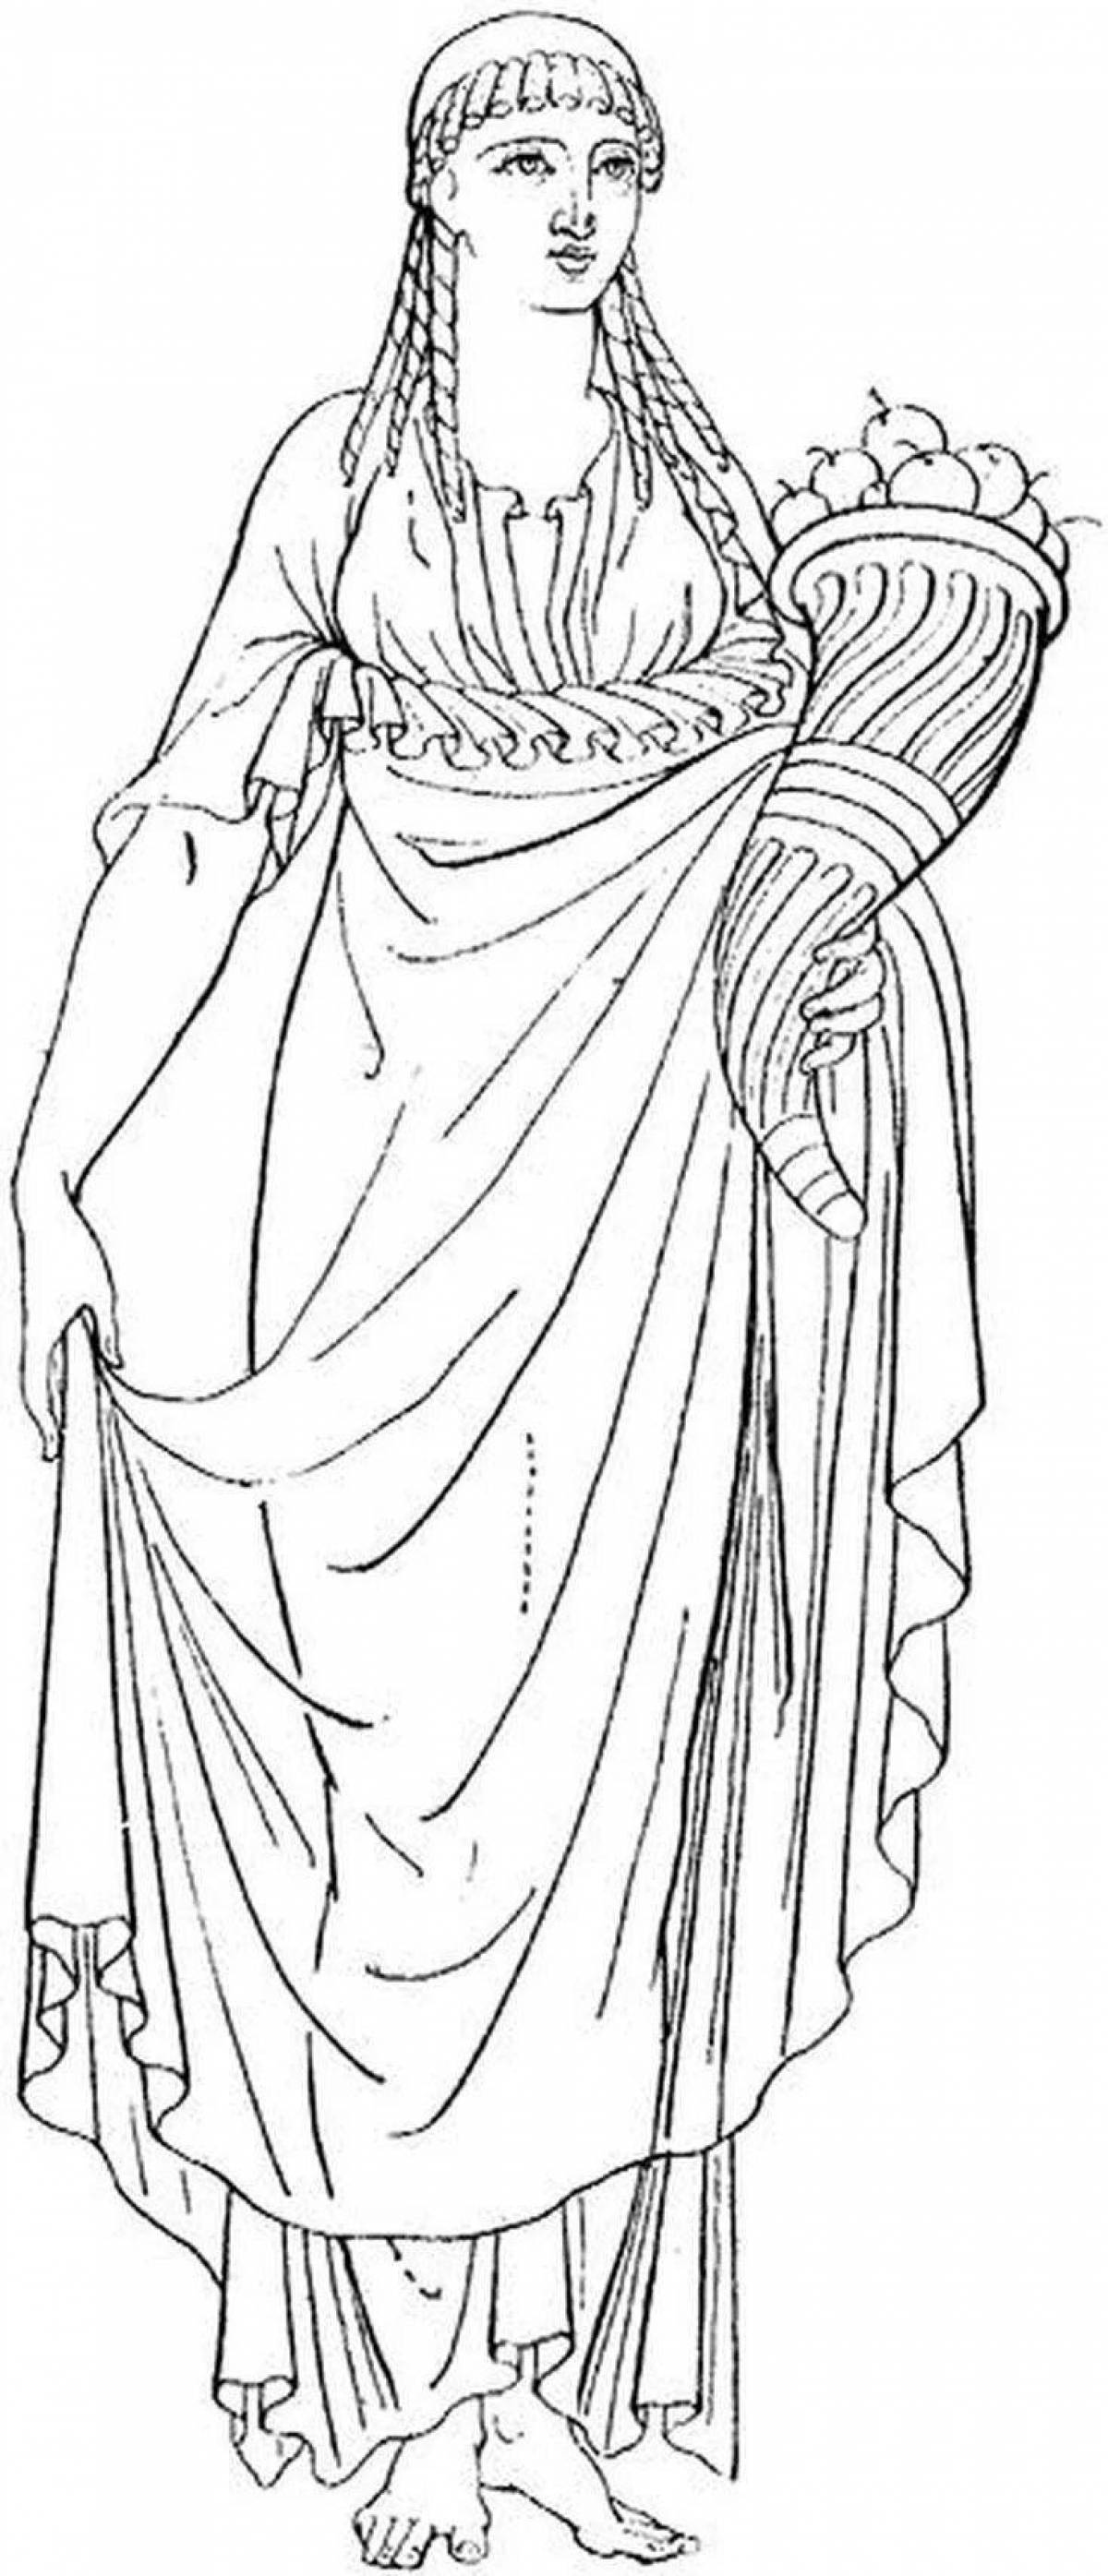 Драматическая раскраска древнегреческой одежды